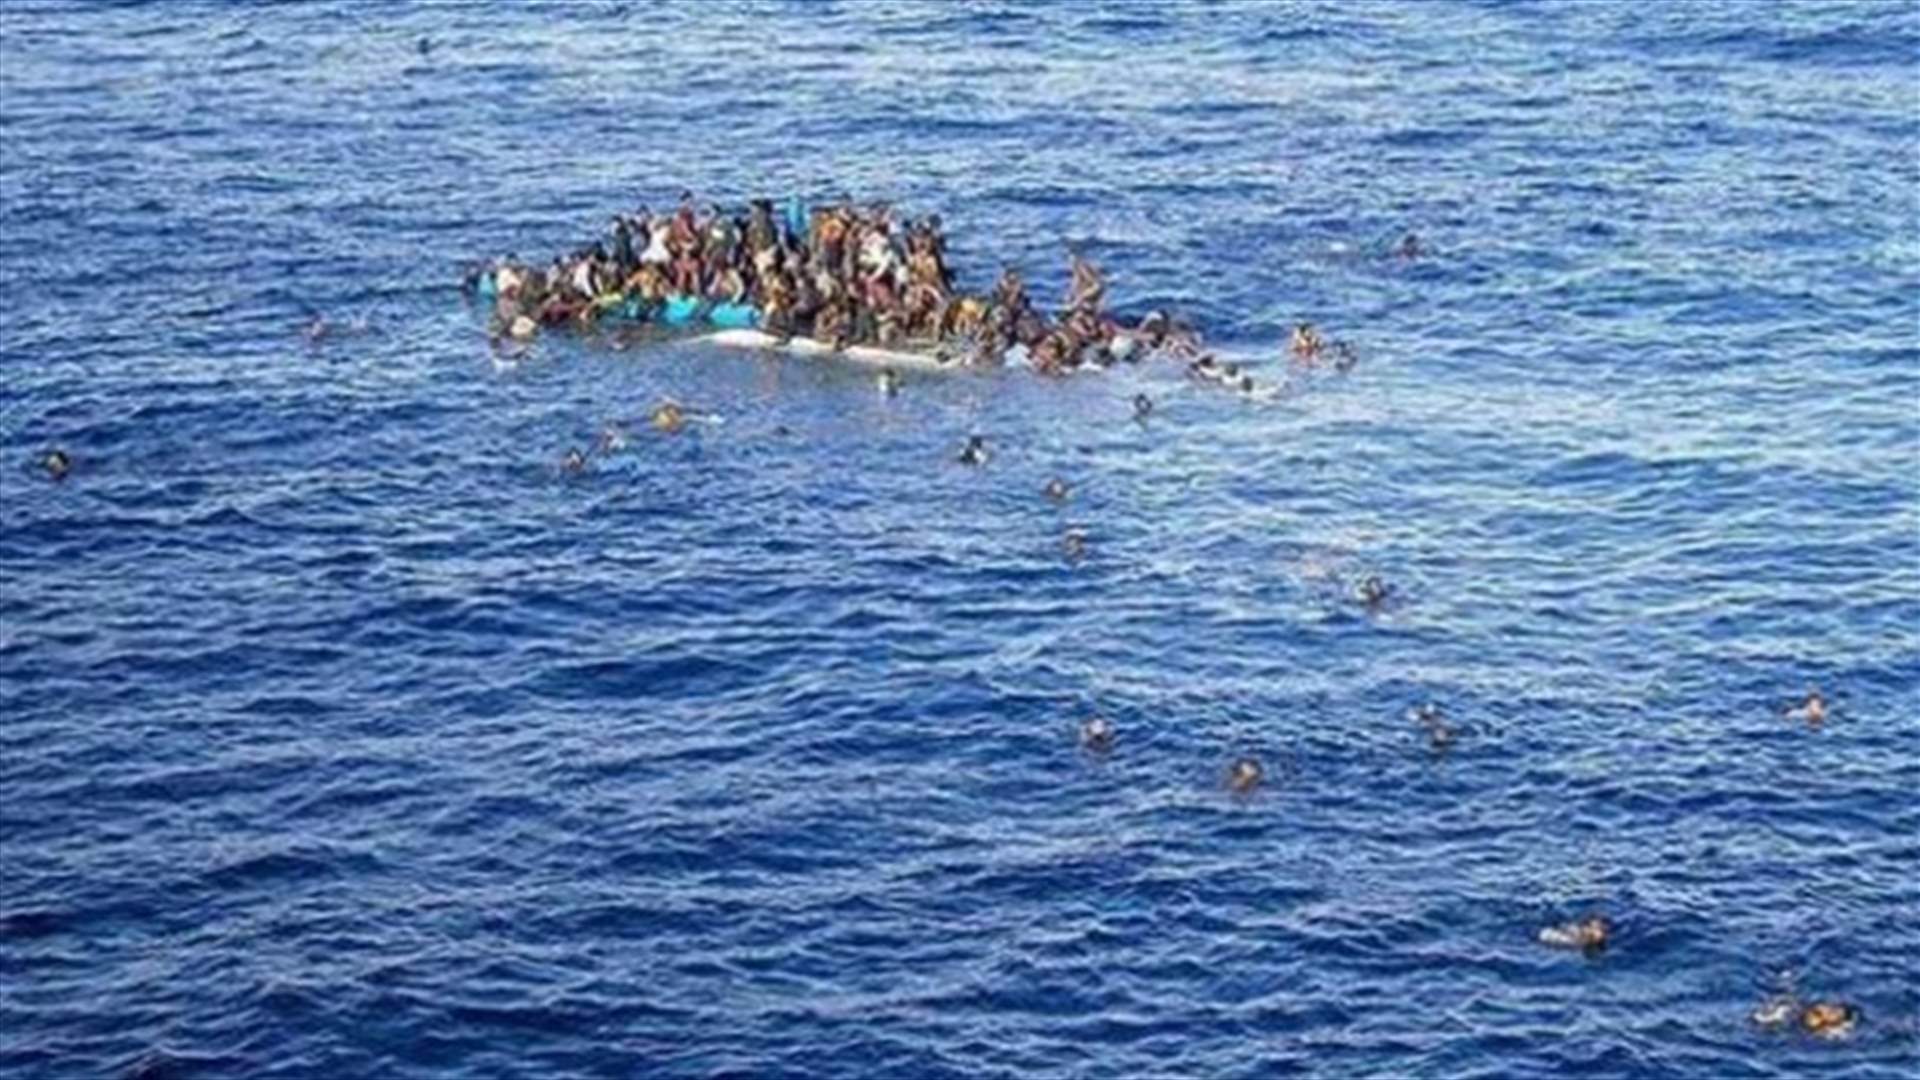 الحلف الاطلسي مستعد للمشاركة ودعم عملية بحرية في بحر ايجه لوقف تدفق المهاجرين